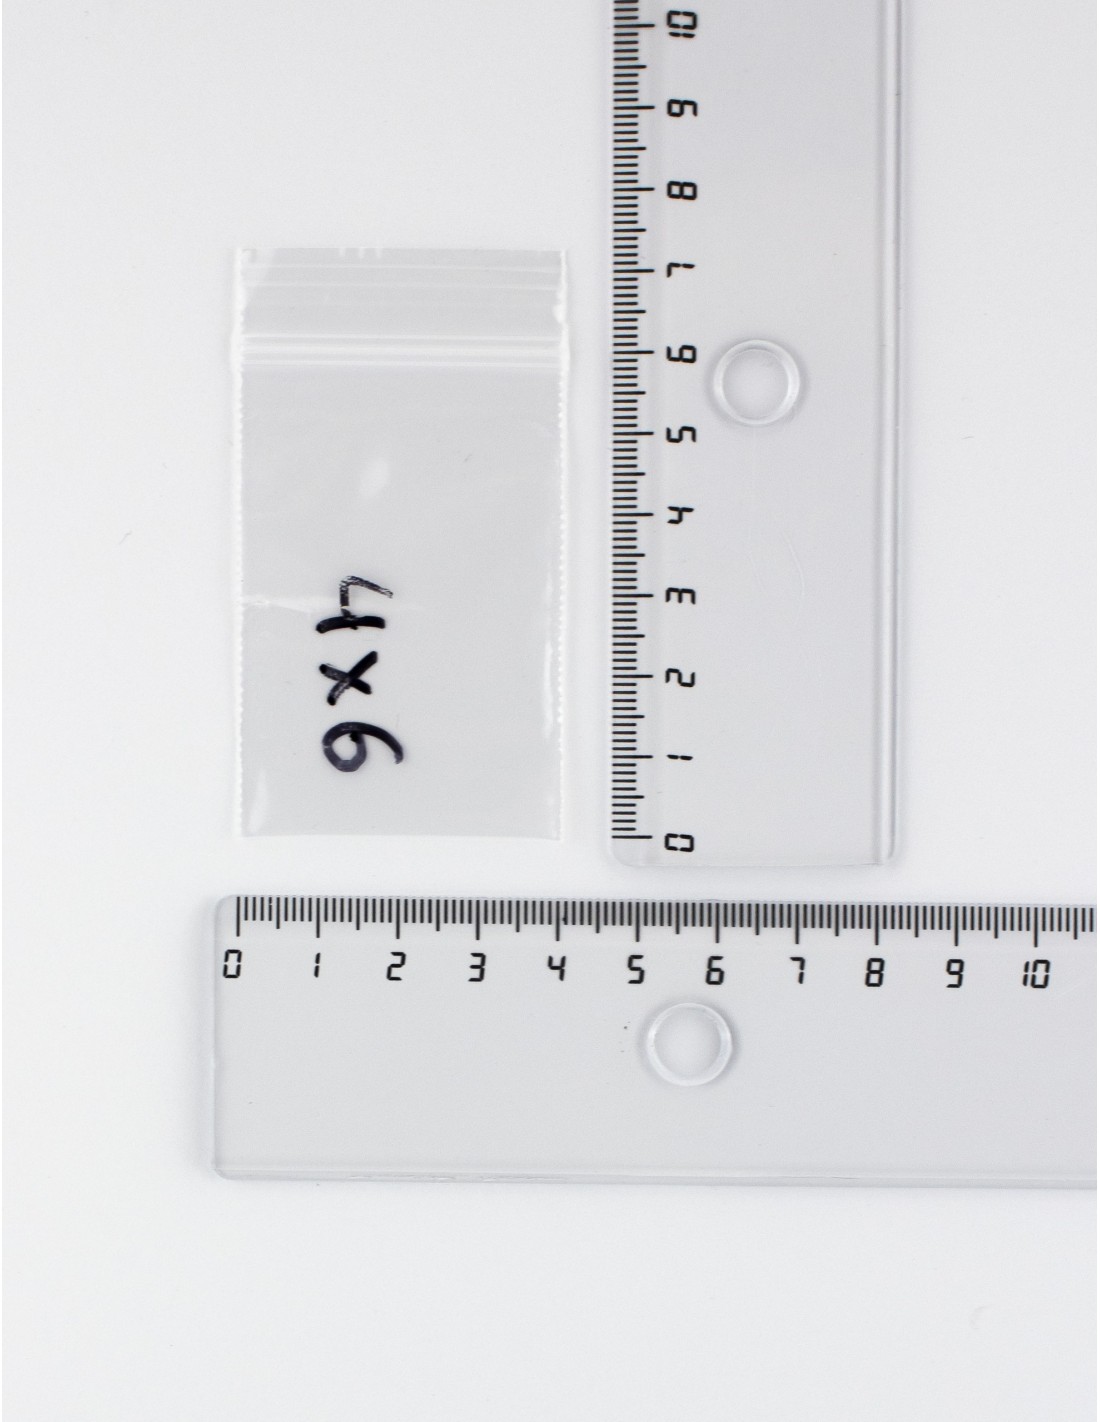 Bolsas con Autocierre Zip transparentes de 4 x 6 cm